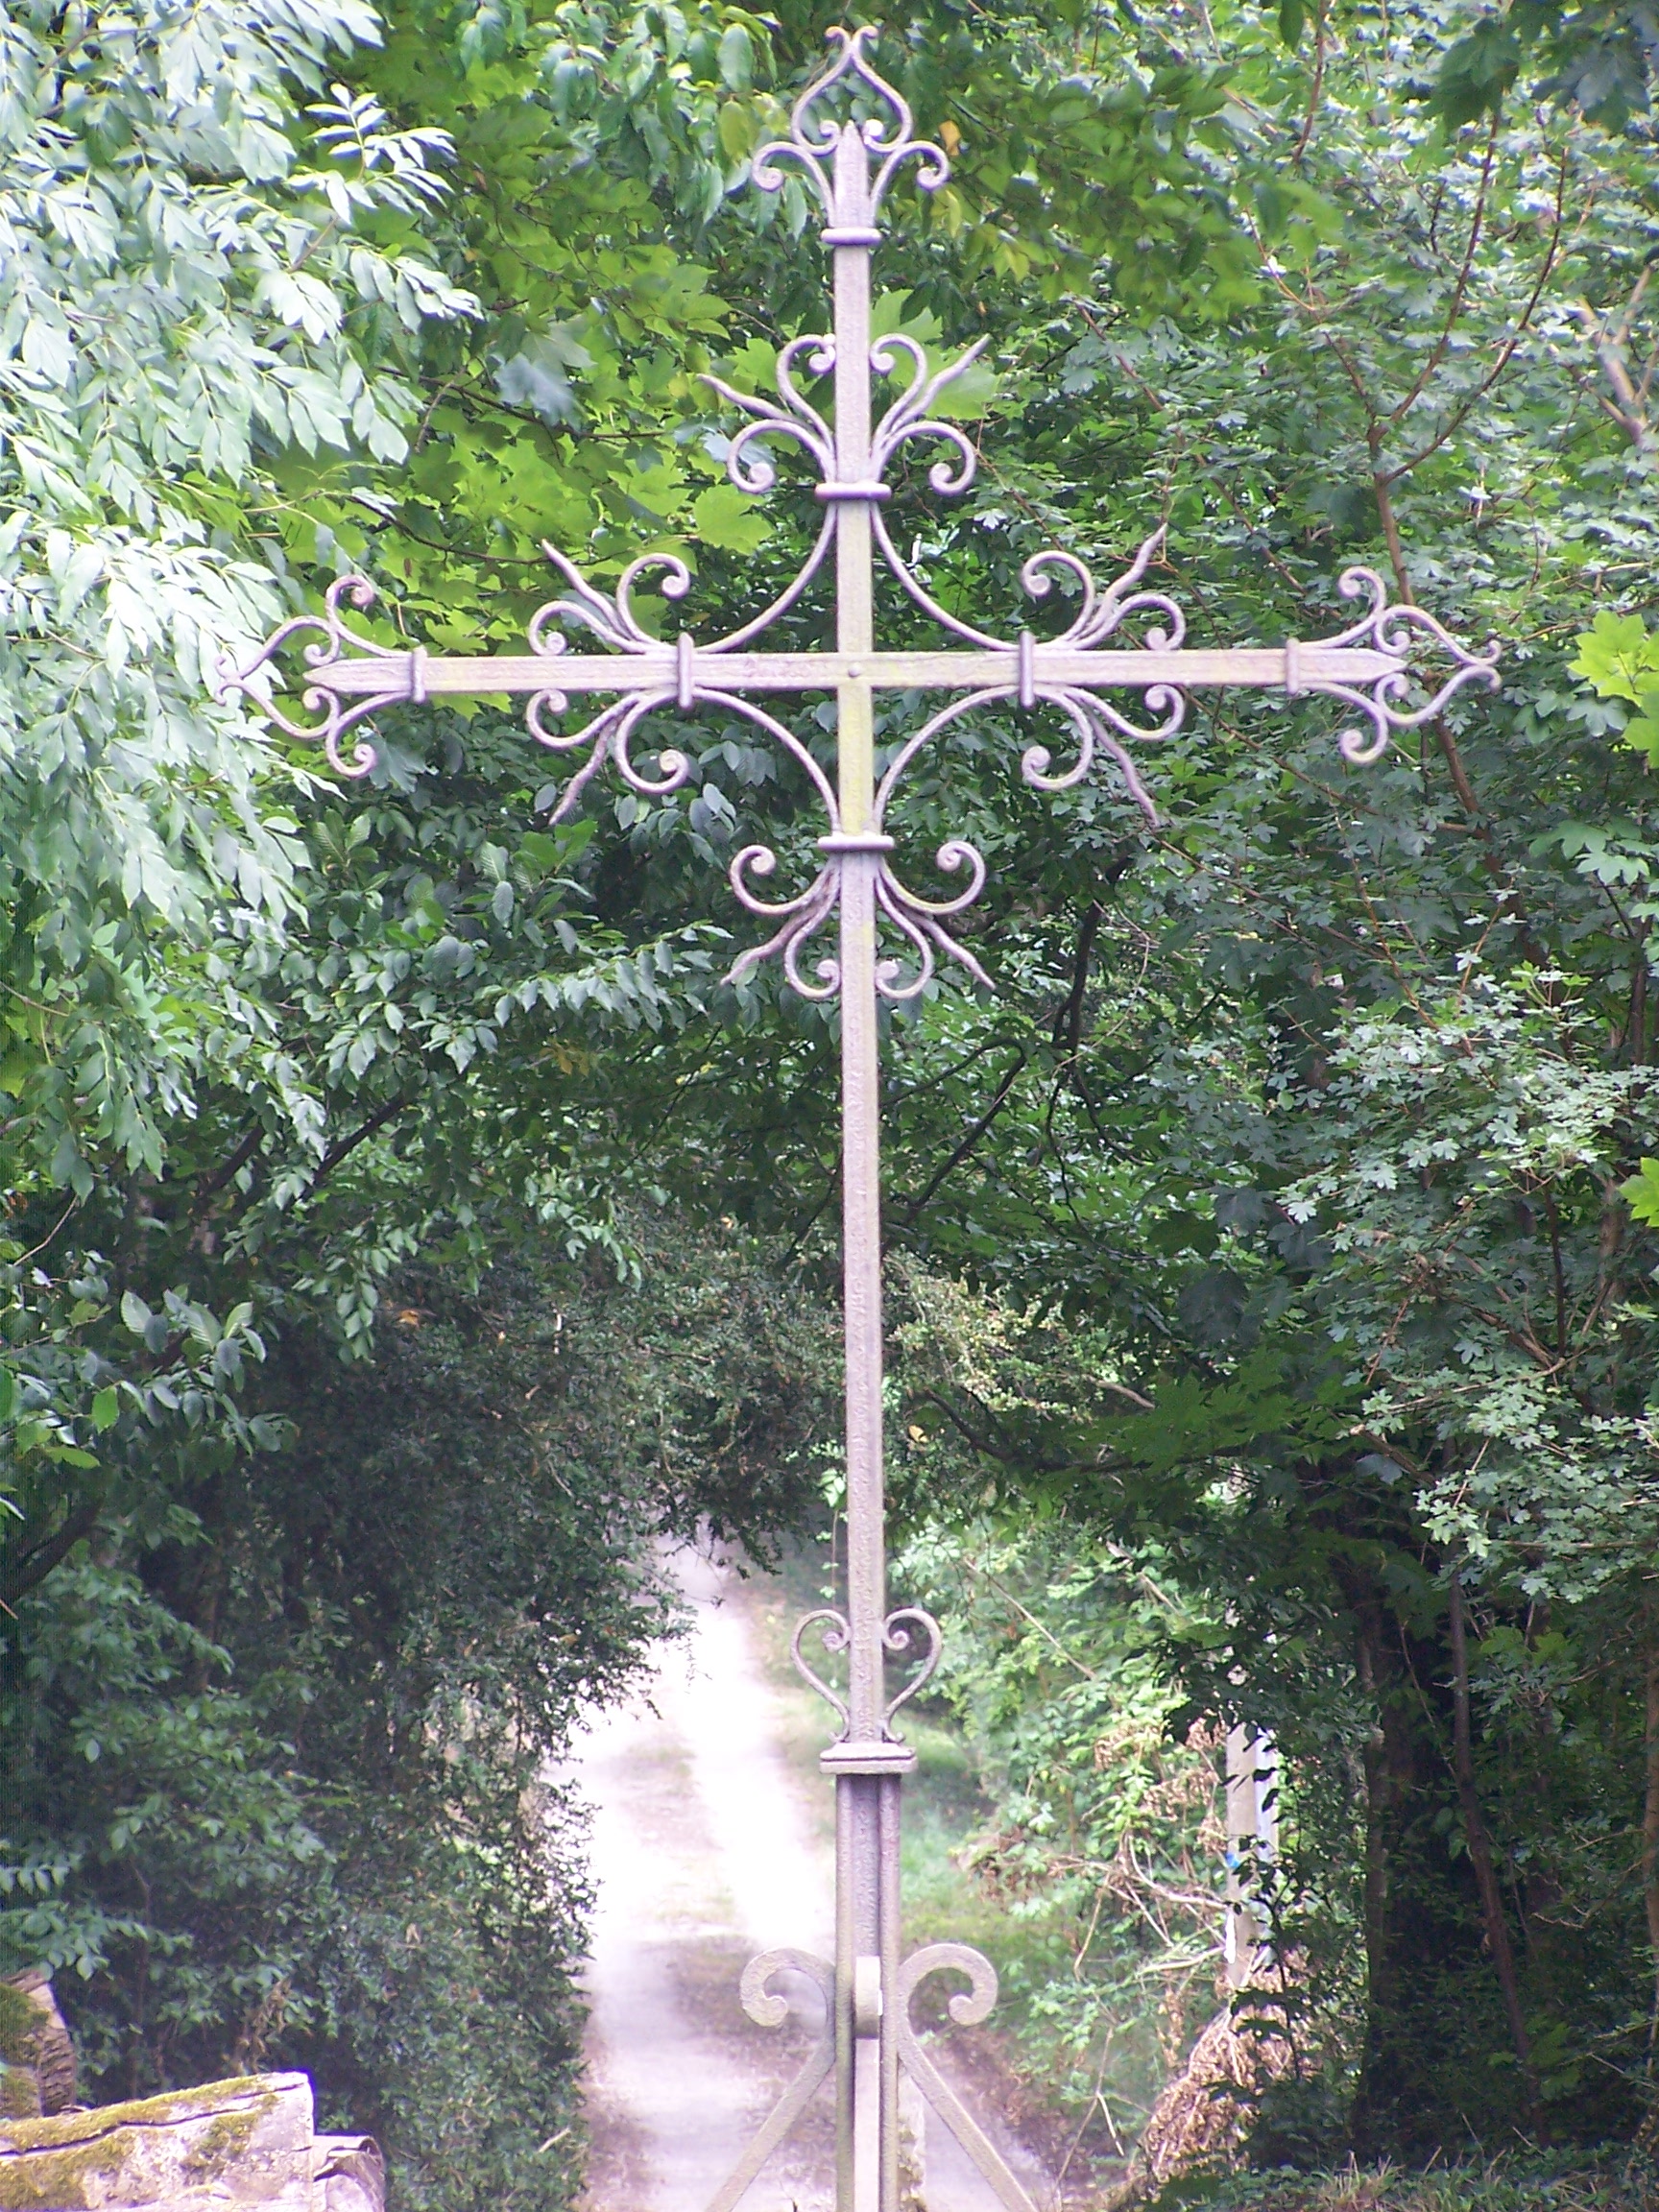 La croix du CorbierLe socle porte 1874, année probable de l'entrée dans les ordres d'Adélaïde Emma, soeur aînée de Franz de Silvestre. Nous l'avons retrouvée en piteux état, en bordure de N4, côté nord. La municipalité nous a aimablement permis de la récupérer. Elle a été restaurée et installée dans la maison familiale.
